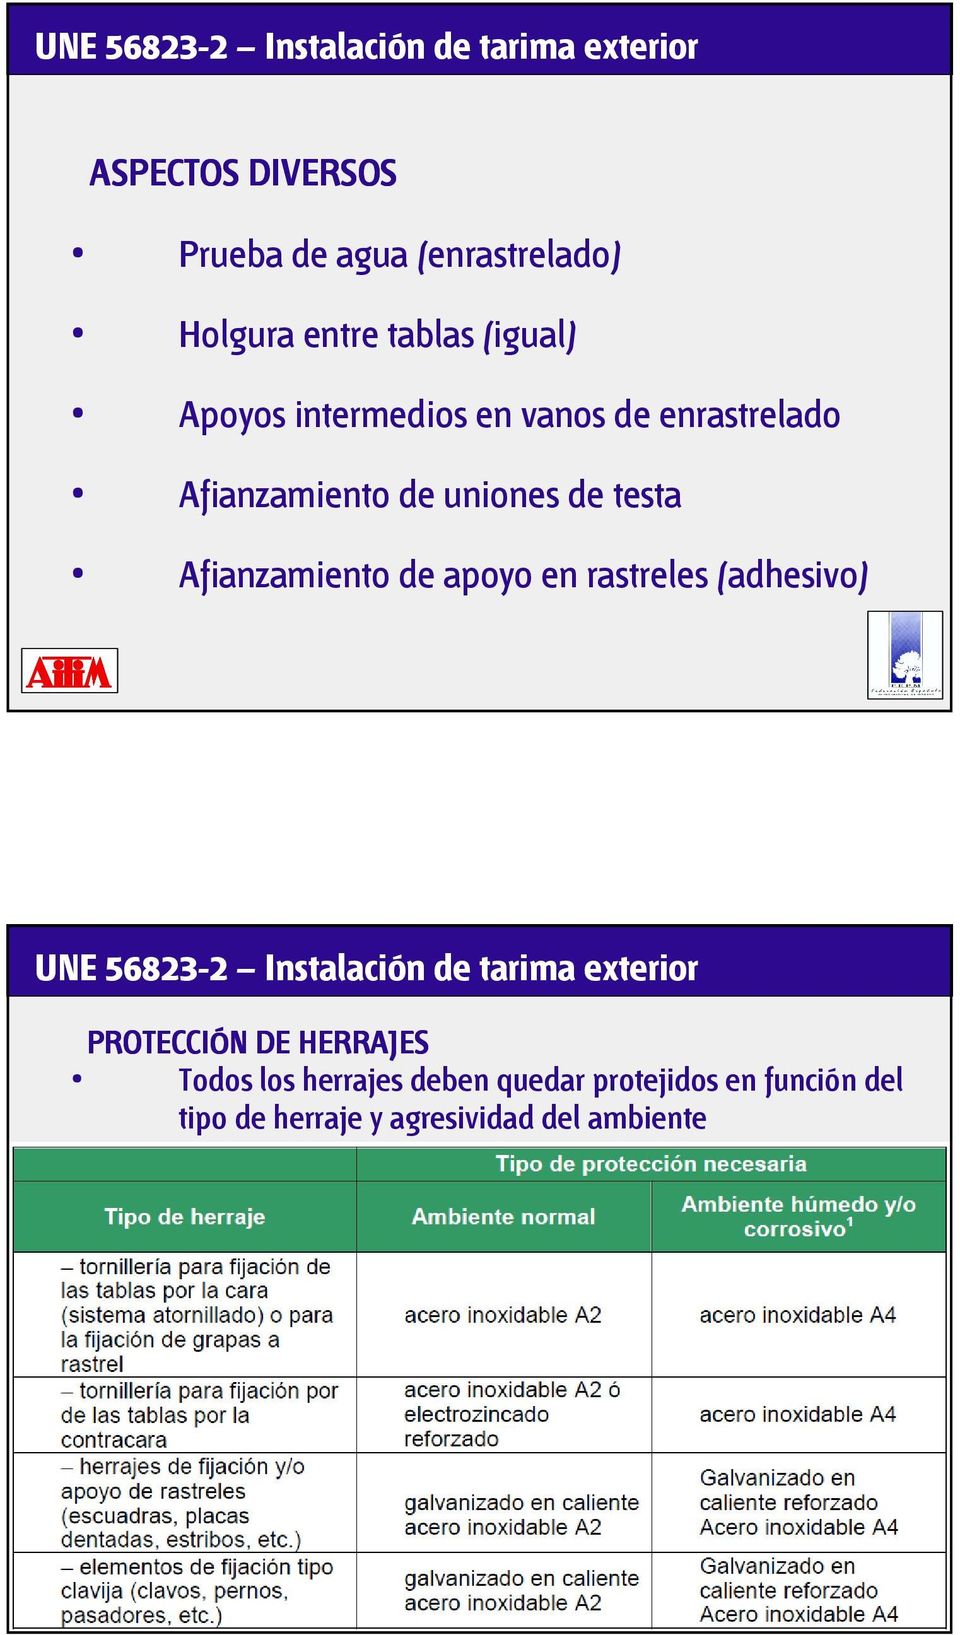 Afianzamiento de apoyo en rastreles (adhesivo) UNE 56823-2 Instalación de tarima exterior PROTECCIÓN